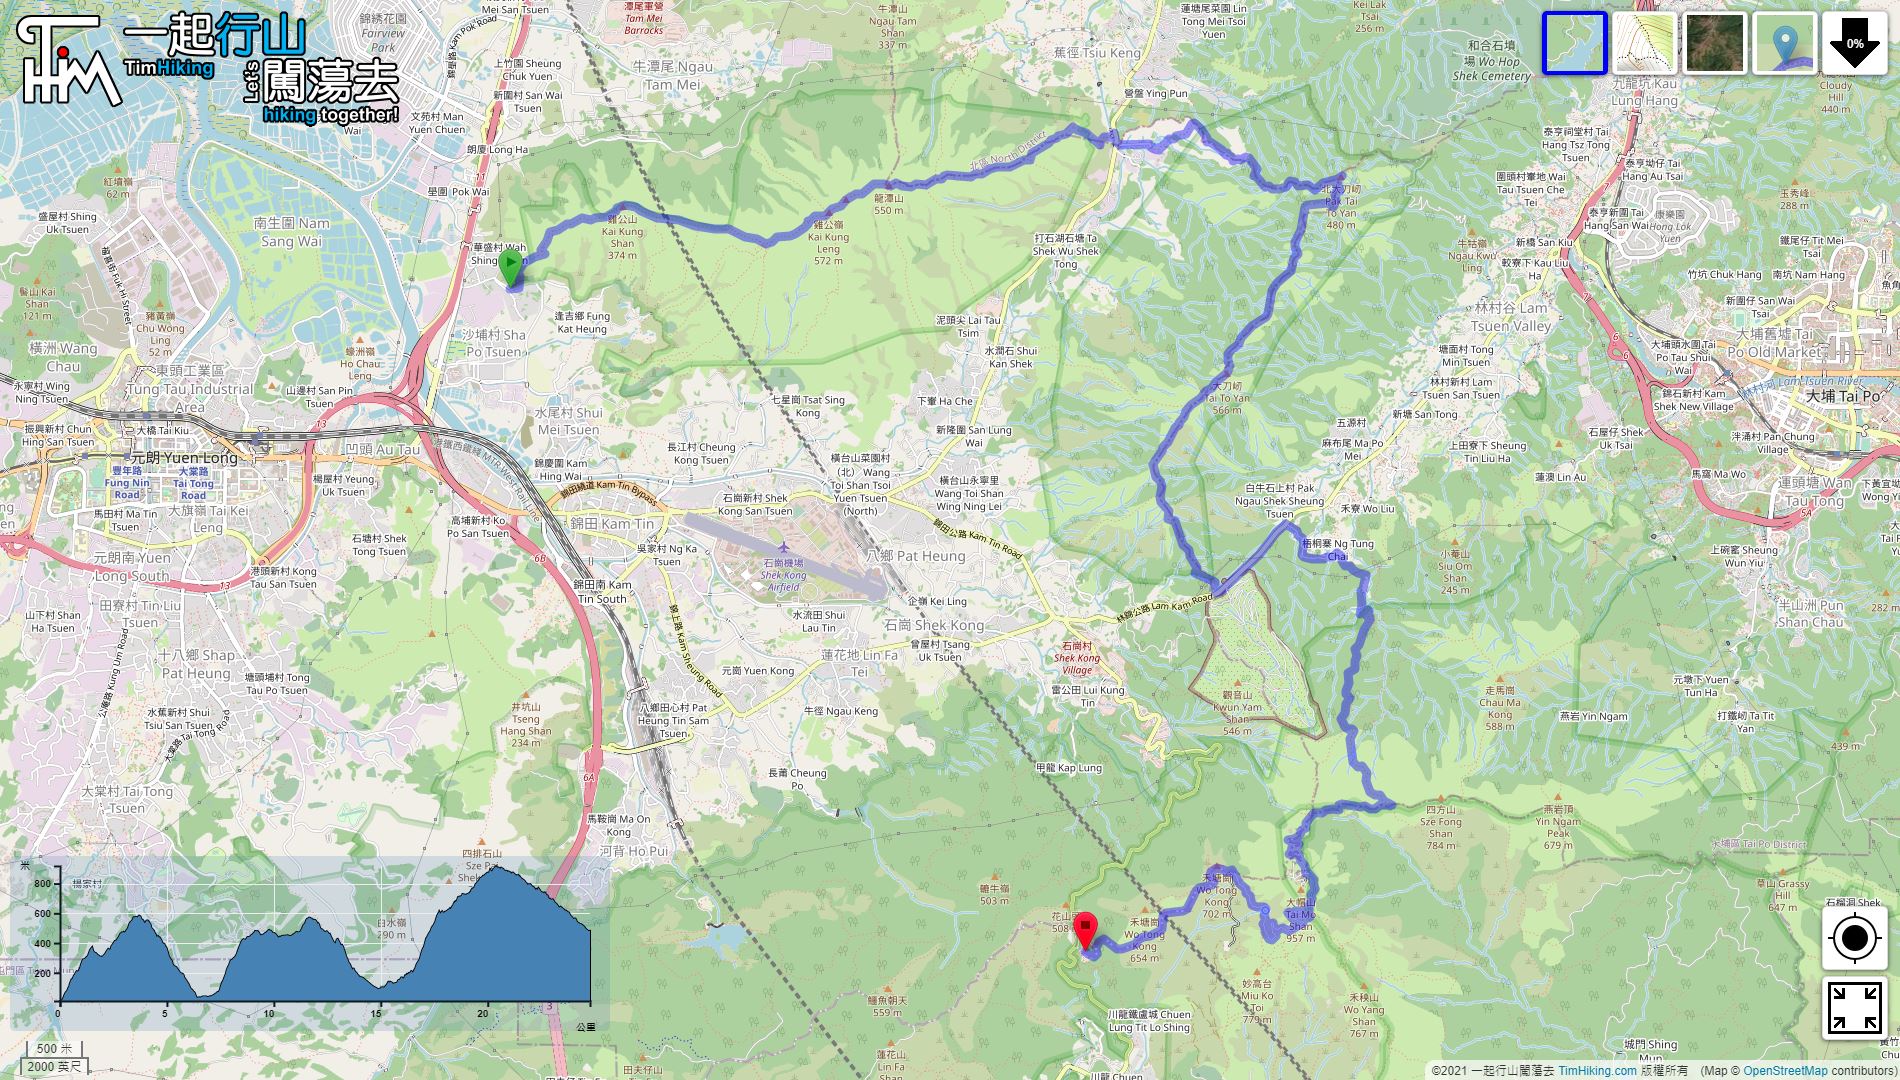 「Three Tai Trail Run」路線Map